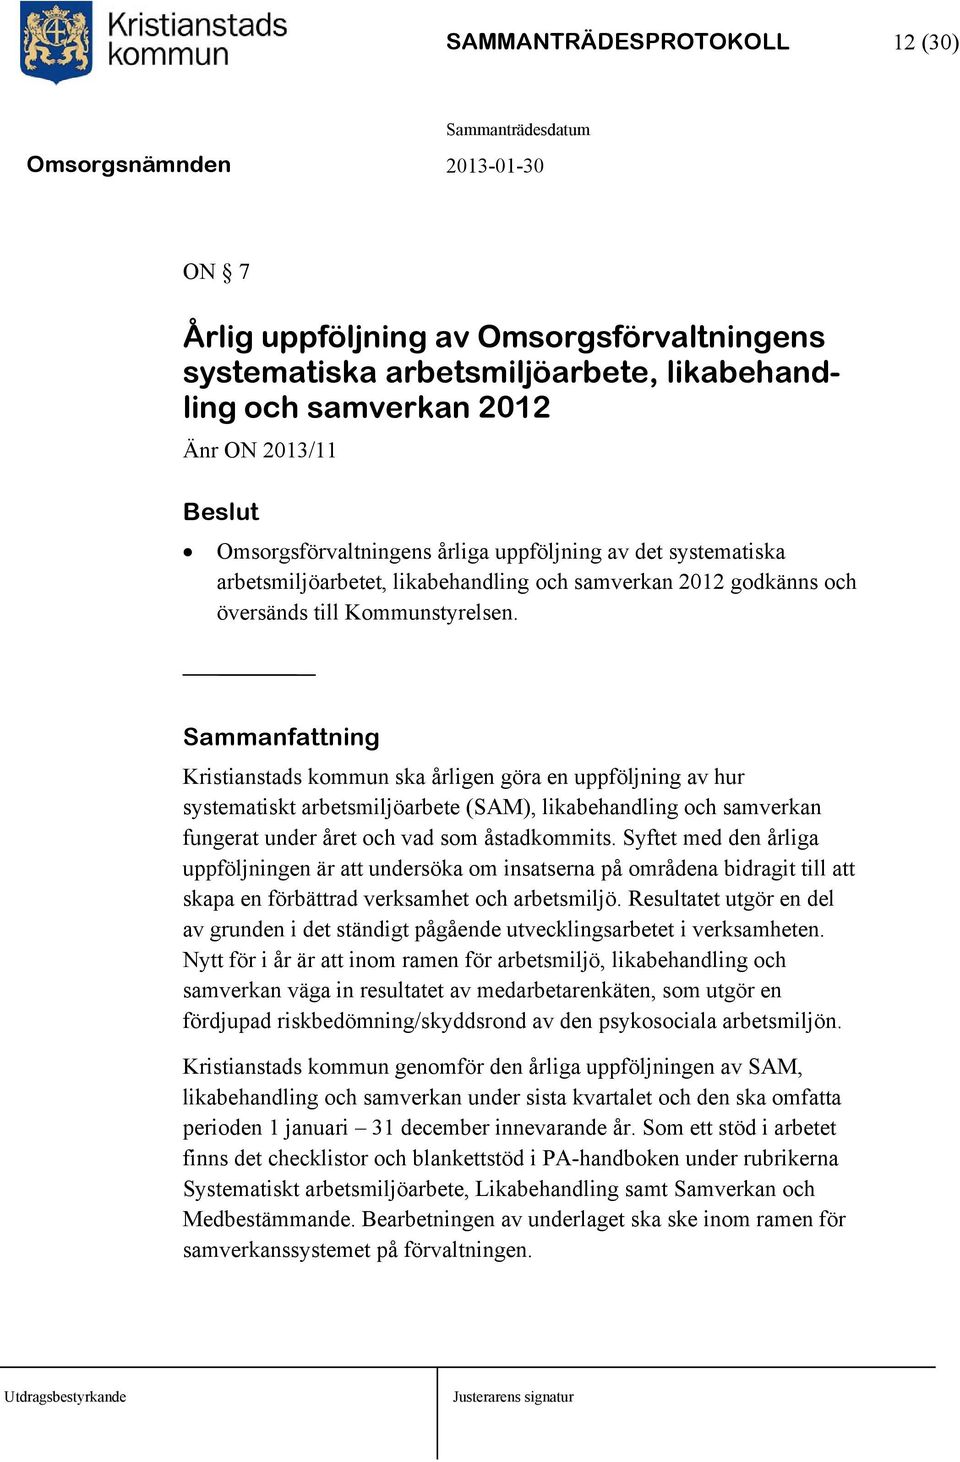 Sammanfattning Kristianstads kommun ska årligen göra en uppföljning av hur systematiskt arbetsmiljöarbete (SAM), likabehandling och samverkan fungerat under året och vad som åstadkommits.